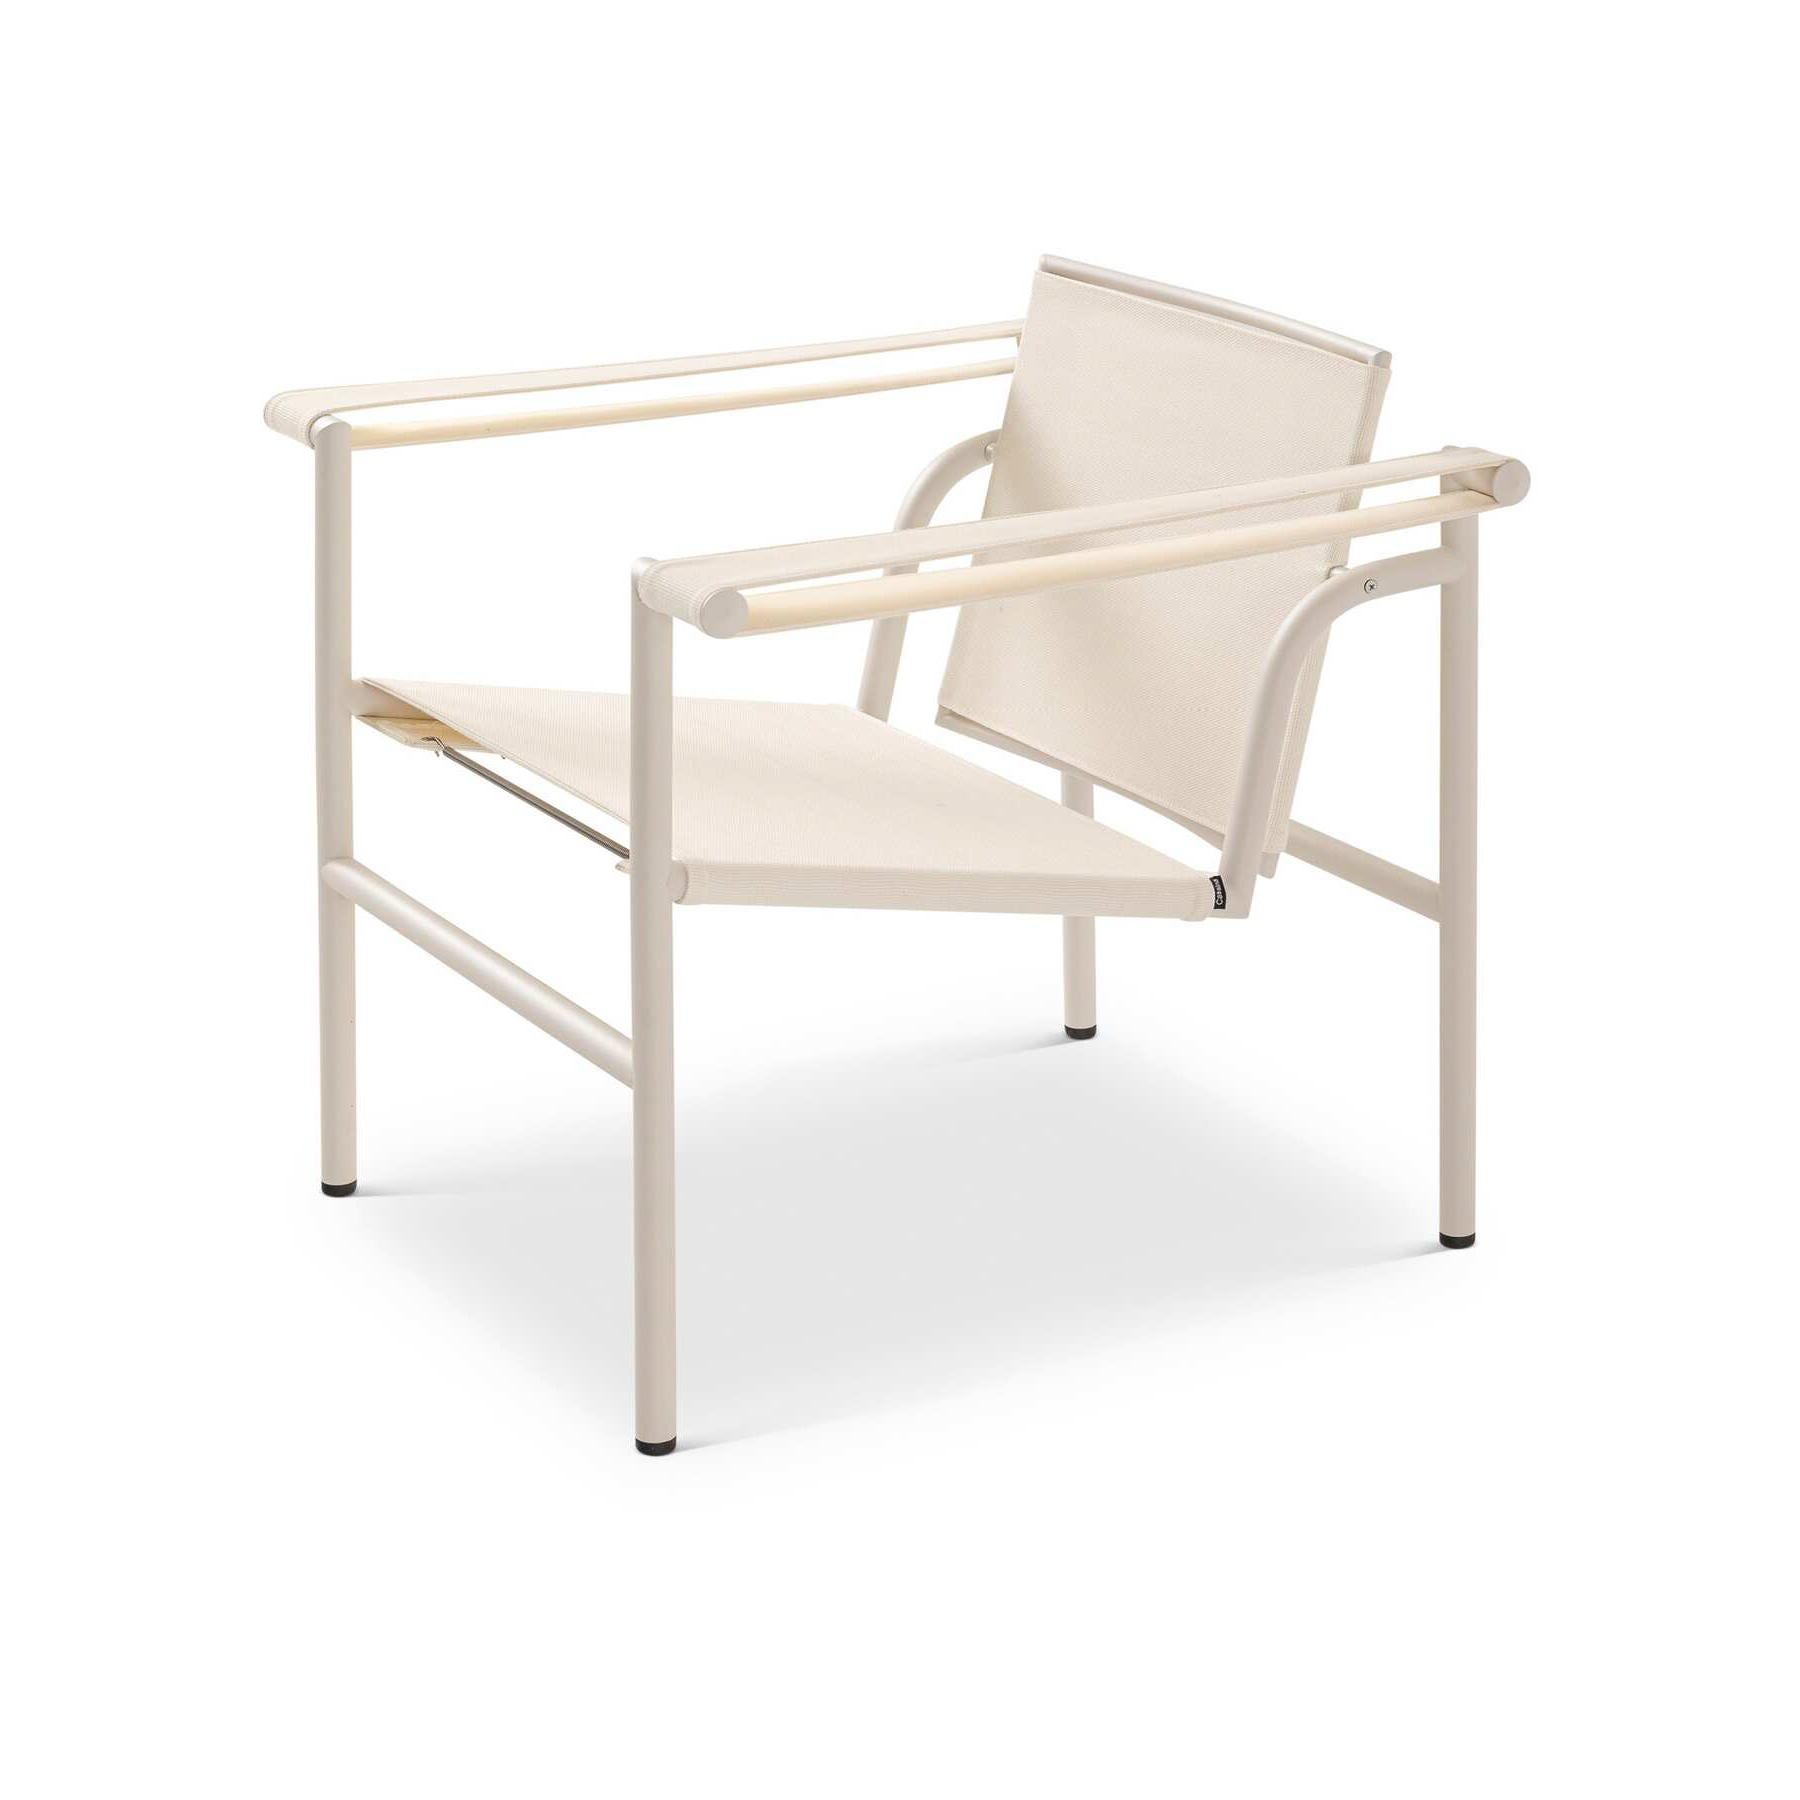 Weißer Stuhl LC1 von Le Corbusier, Pierre Jeanneret, Charlotte Perriand aus dem Jahr 1928. Neu aufgelegt im Jahr 1965.
Hergestellt von Cassina in Italien.

Ein leichter, kompakter Stuhl, der zusammen mit anderen wichtigen Modellen wie den Sesseln